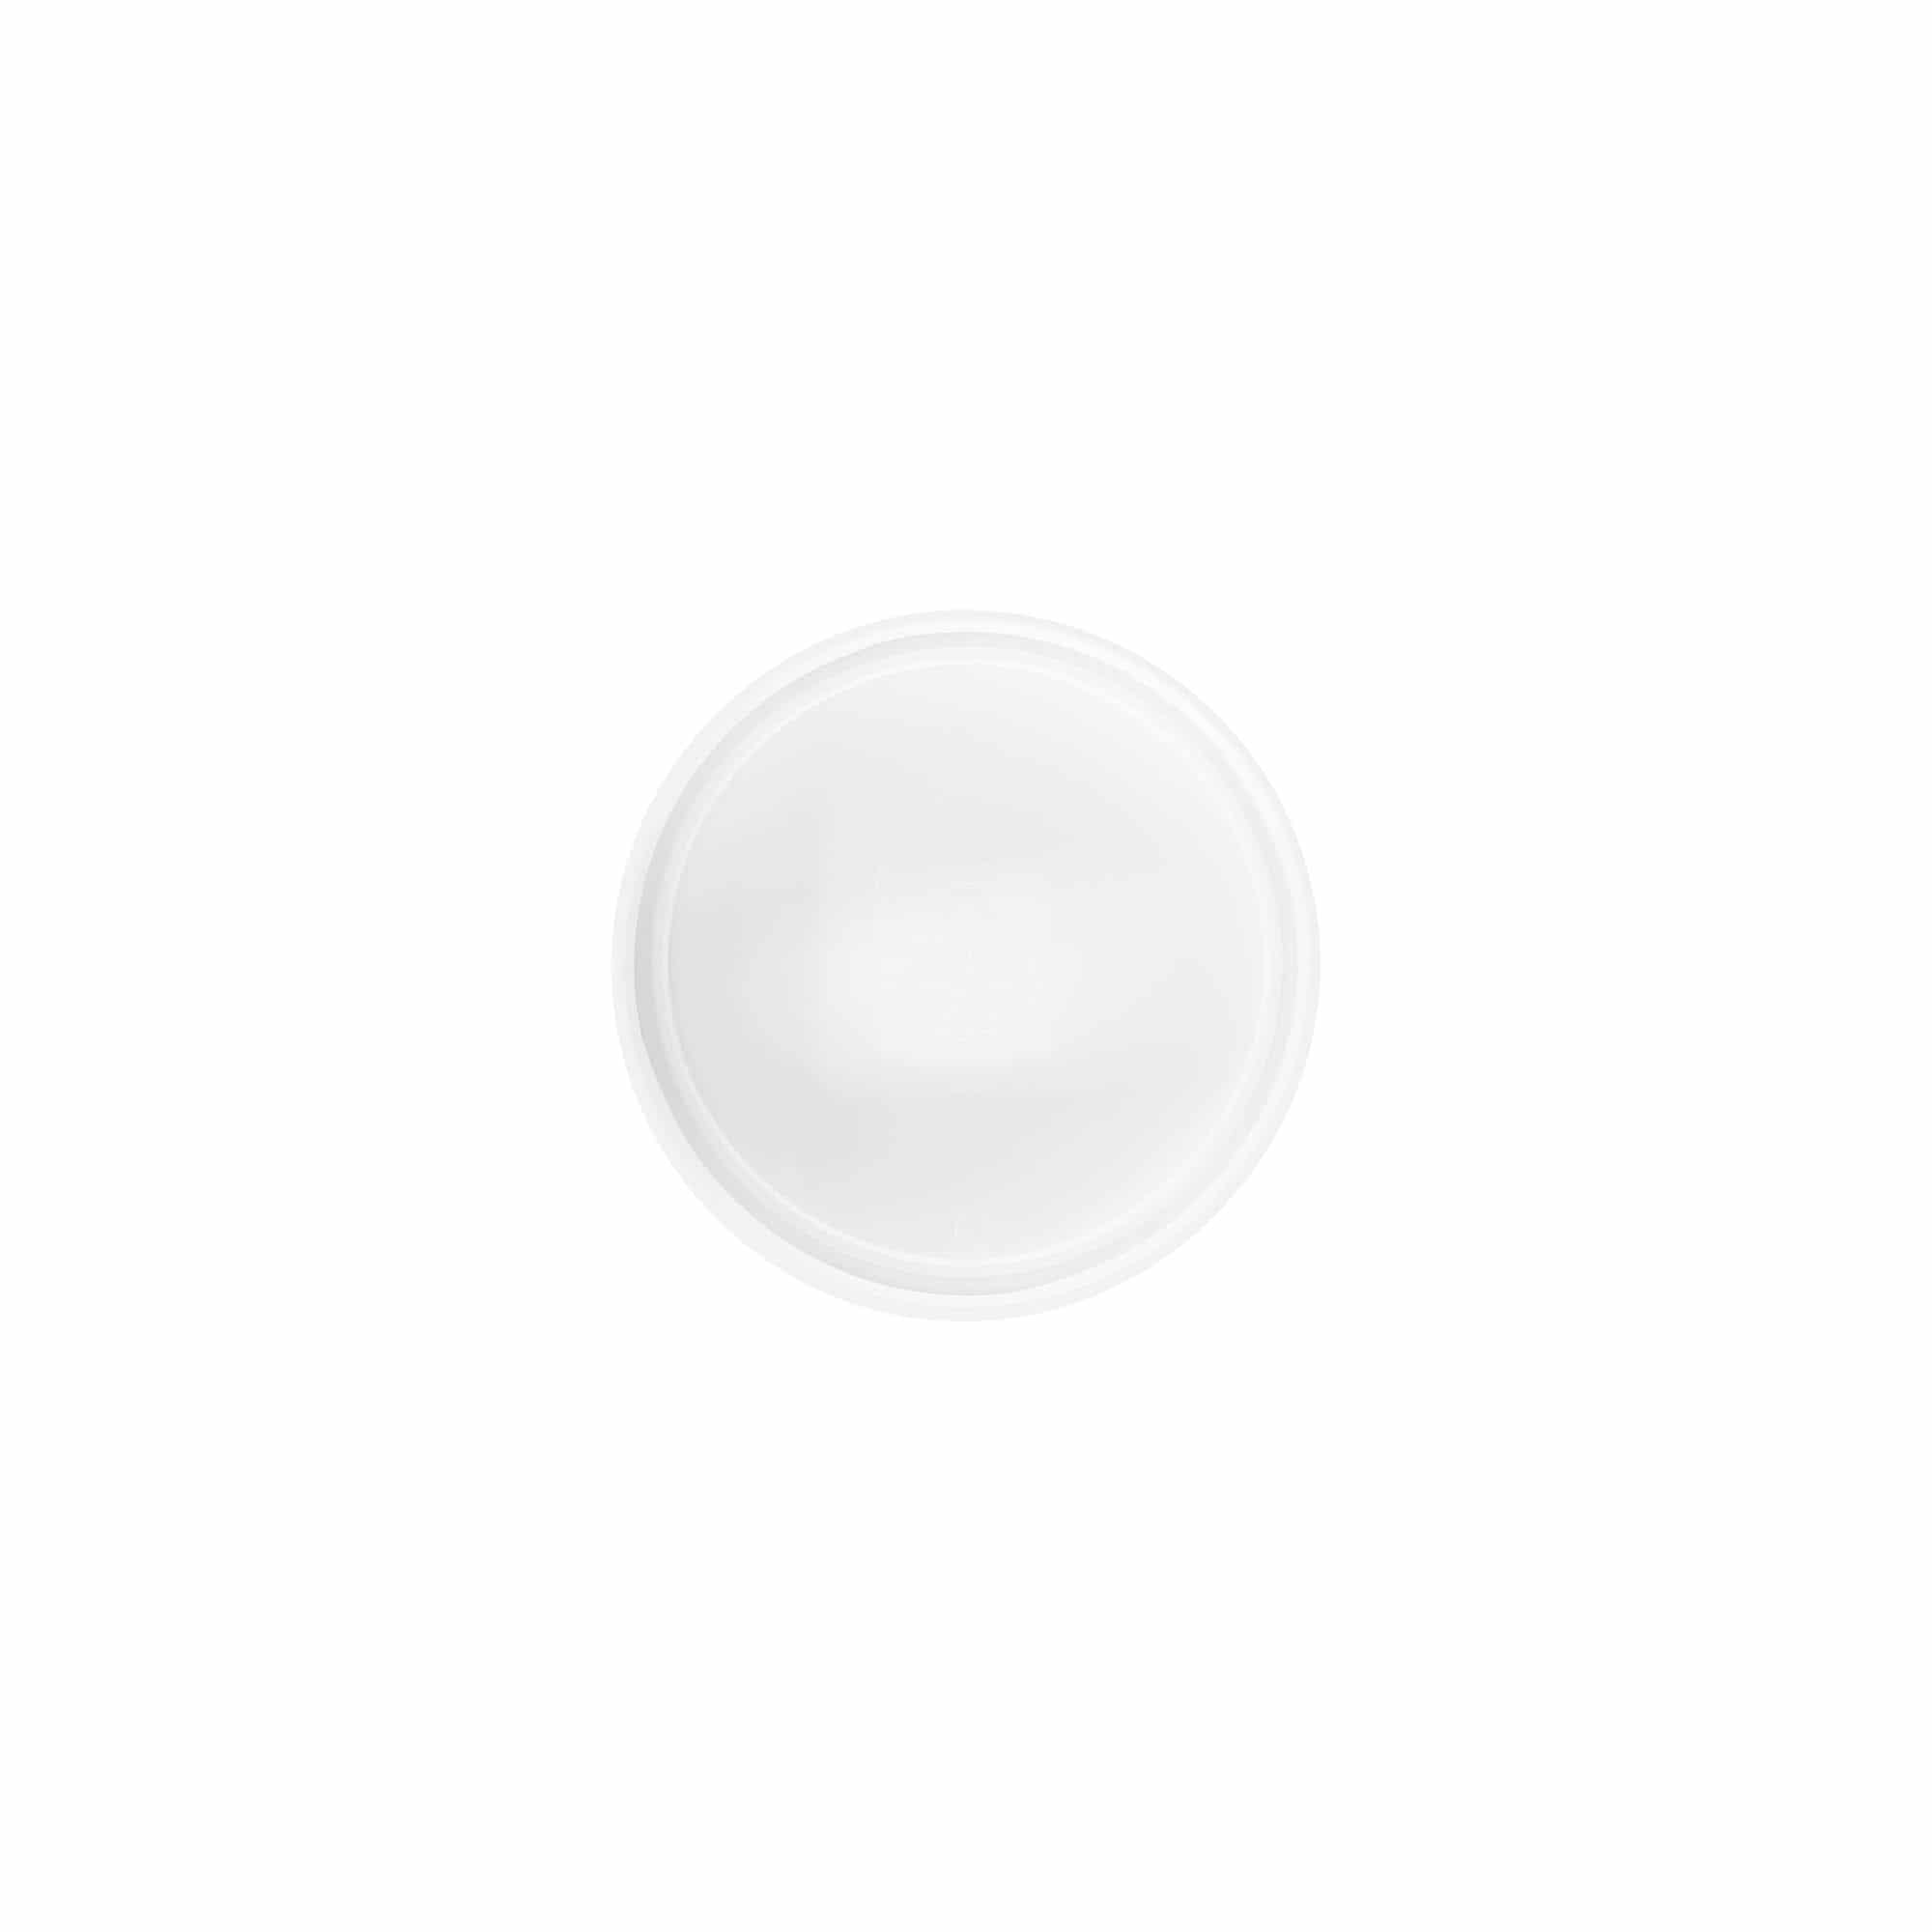 Screw cap 'White Line' for 60ml, PP plastic, white